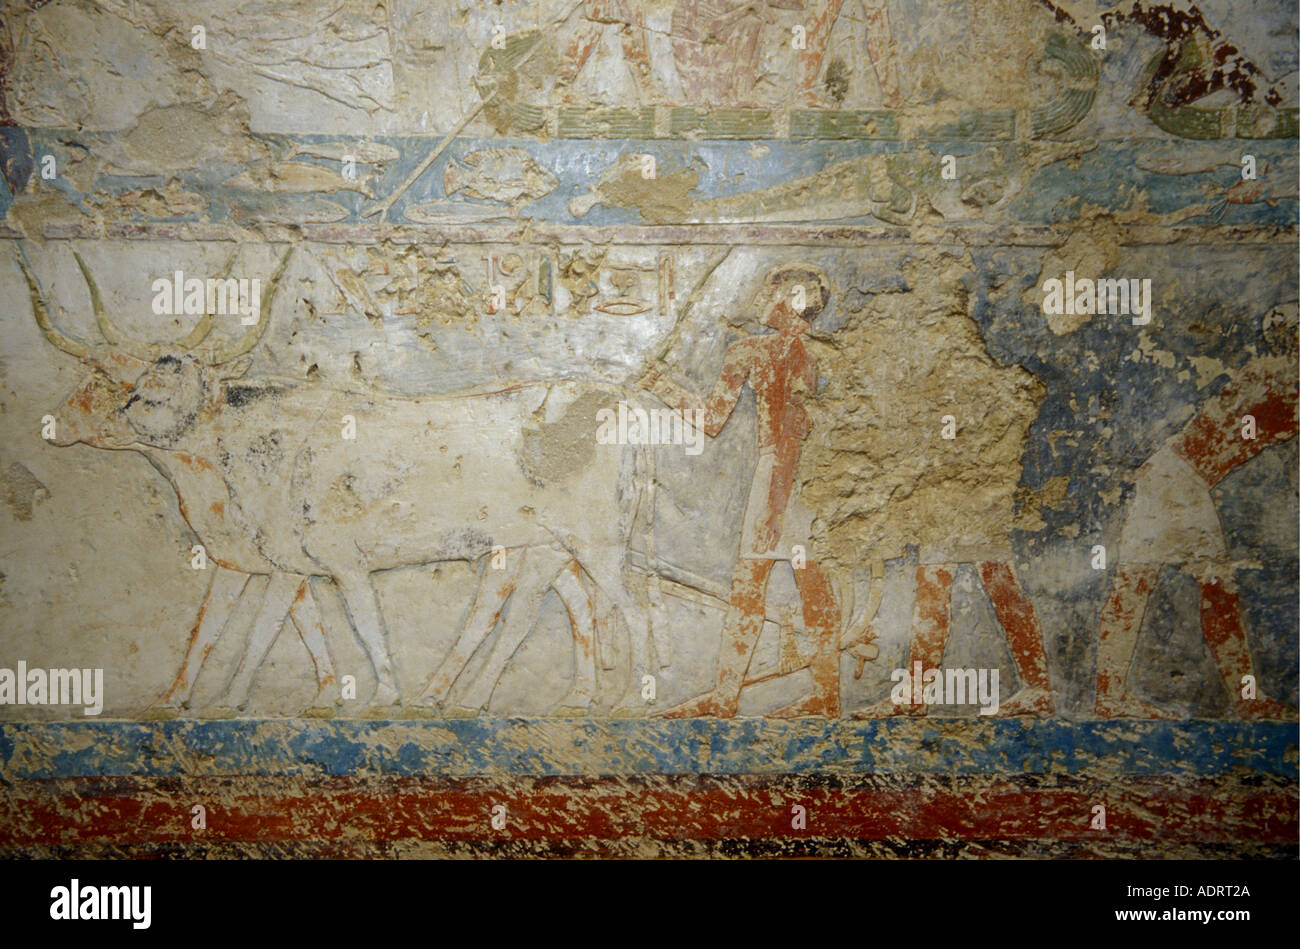 Ägypten Wandmalereien des Bauernlebens unter den Pharaonen in den Höhlengräbern bei mir, Mittelägypten sind von 6-12. Dynastien datiert. Stockfoto